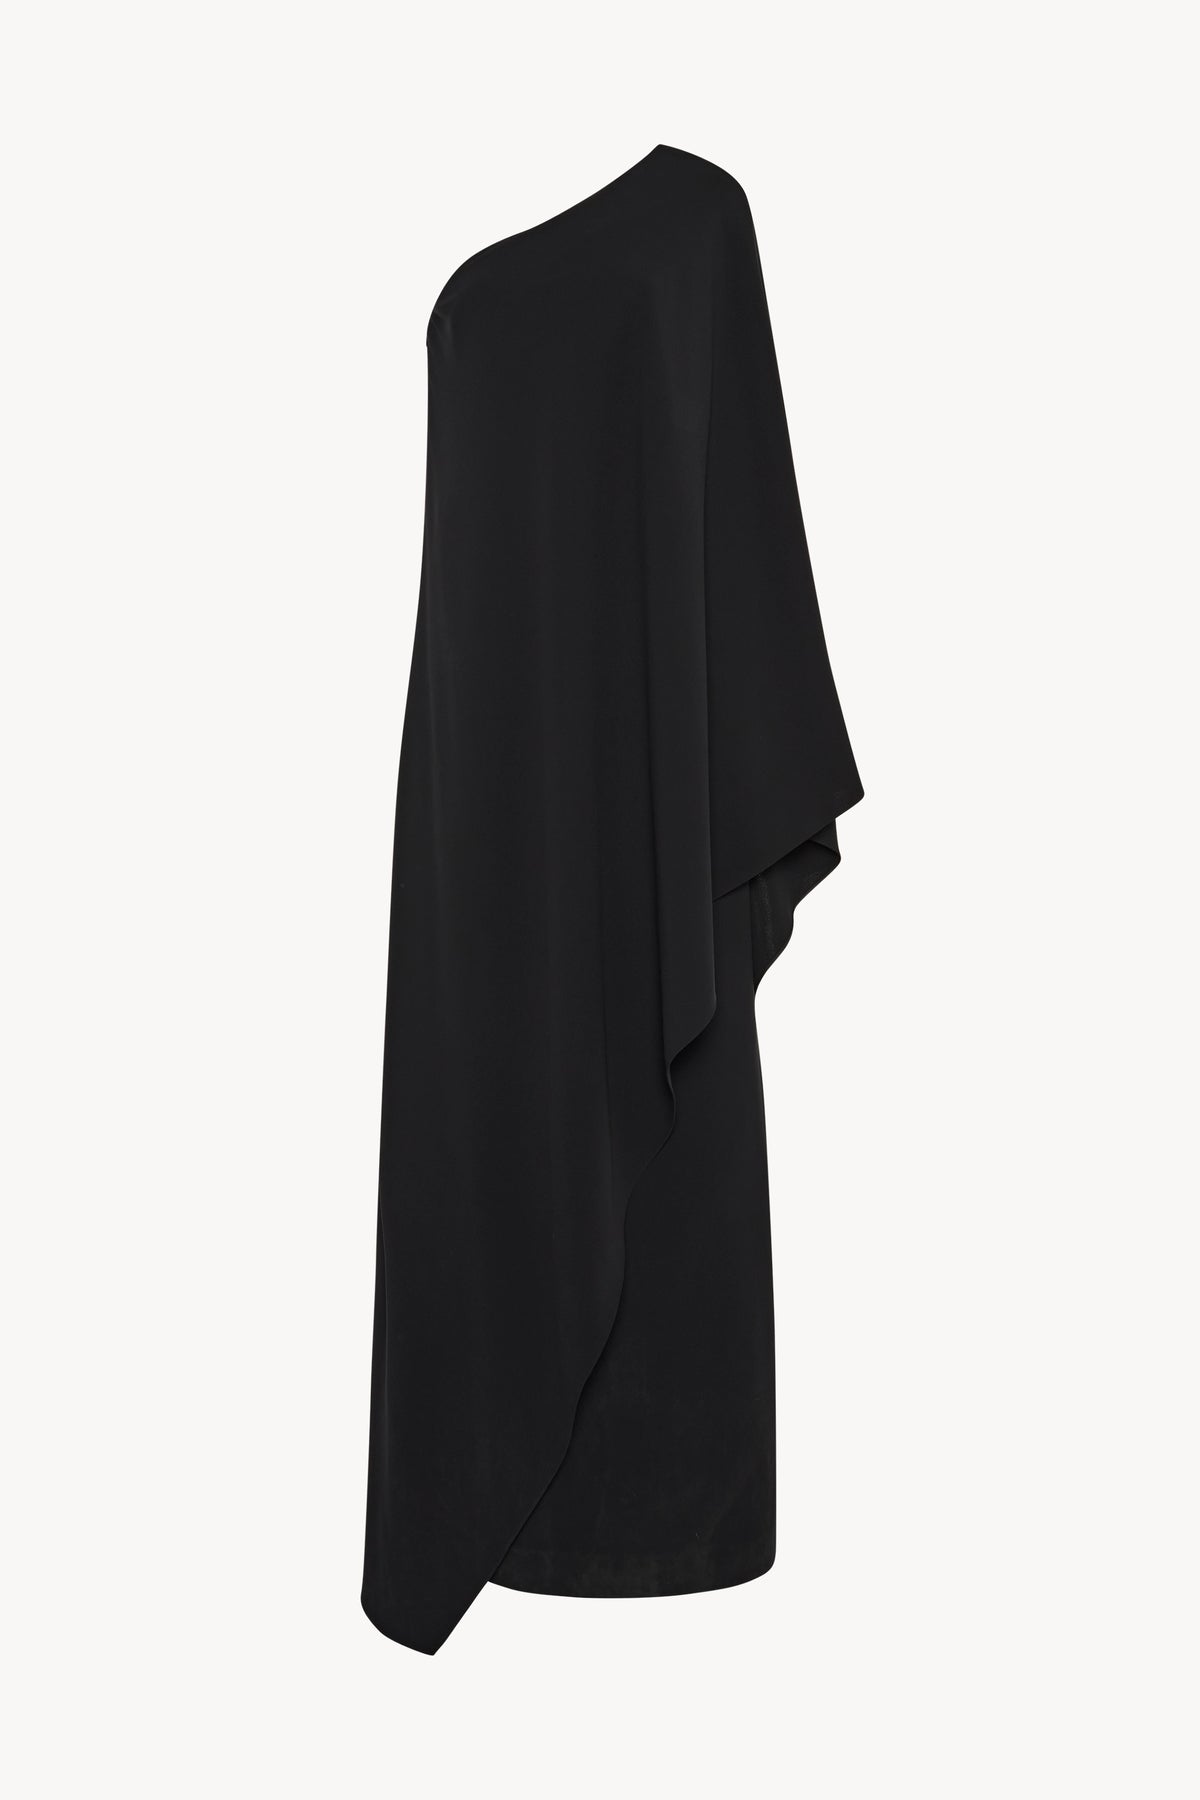 Sparrow Dress Black in Silk – The Row